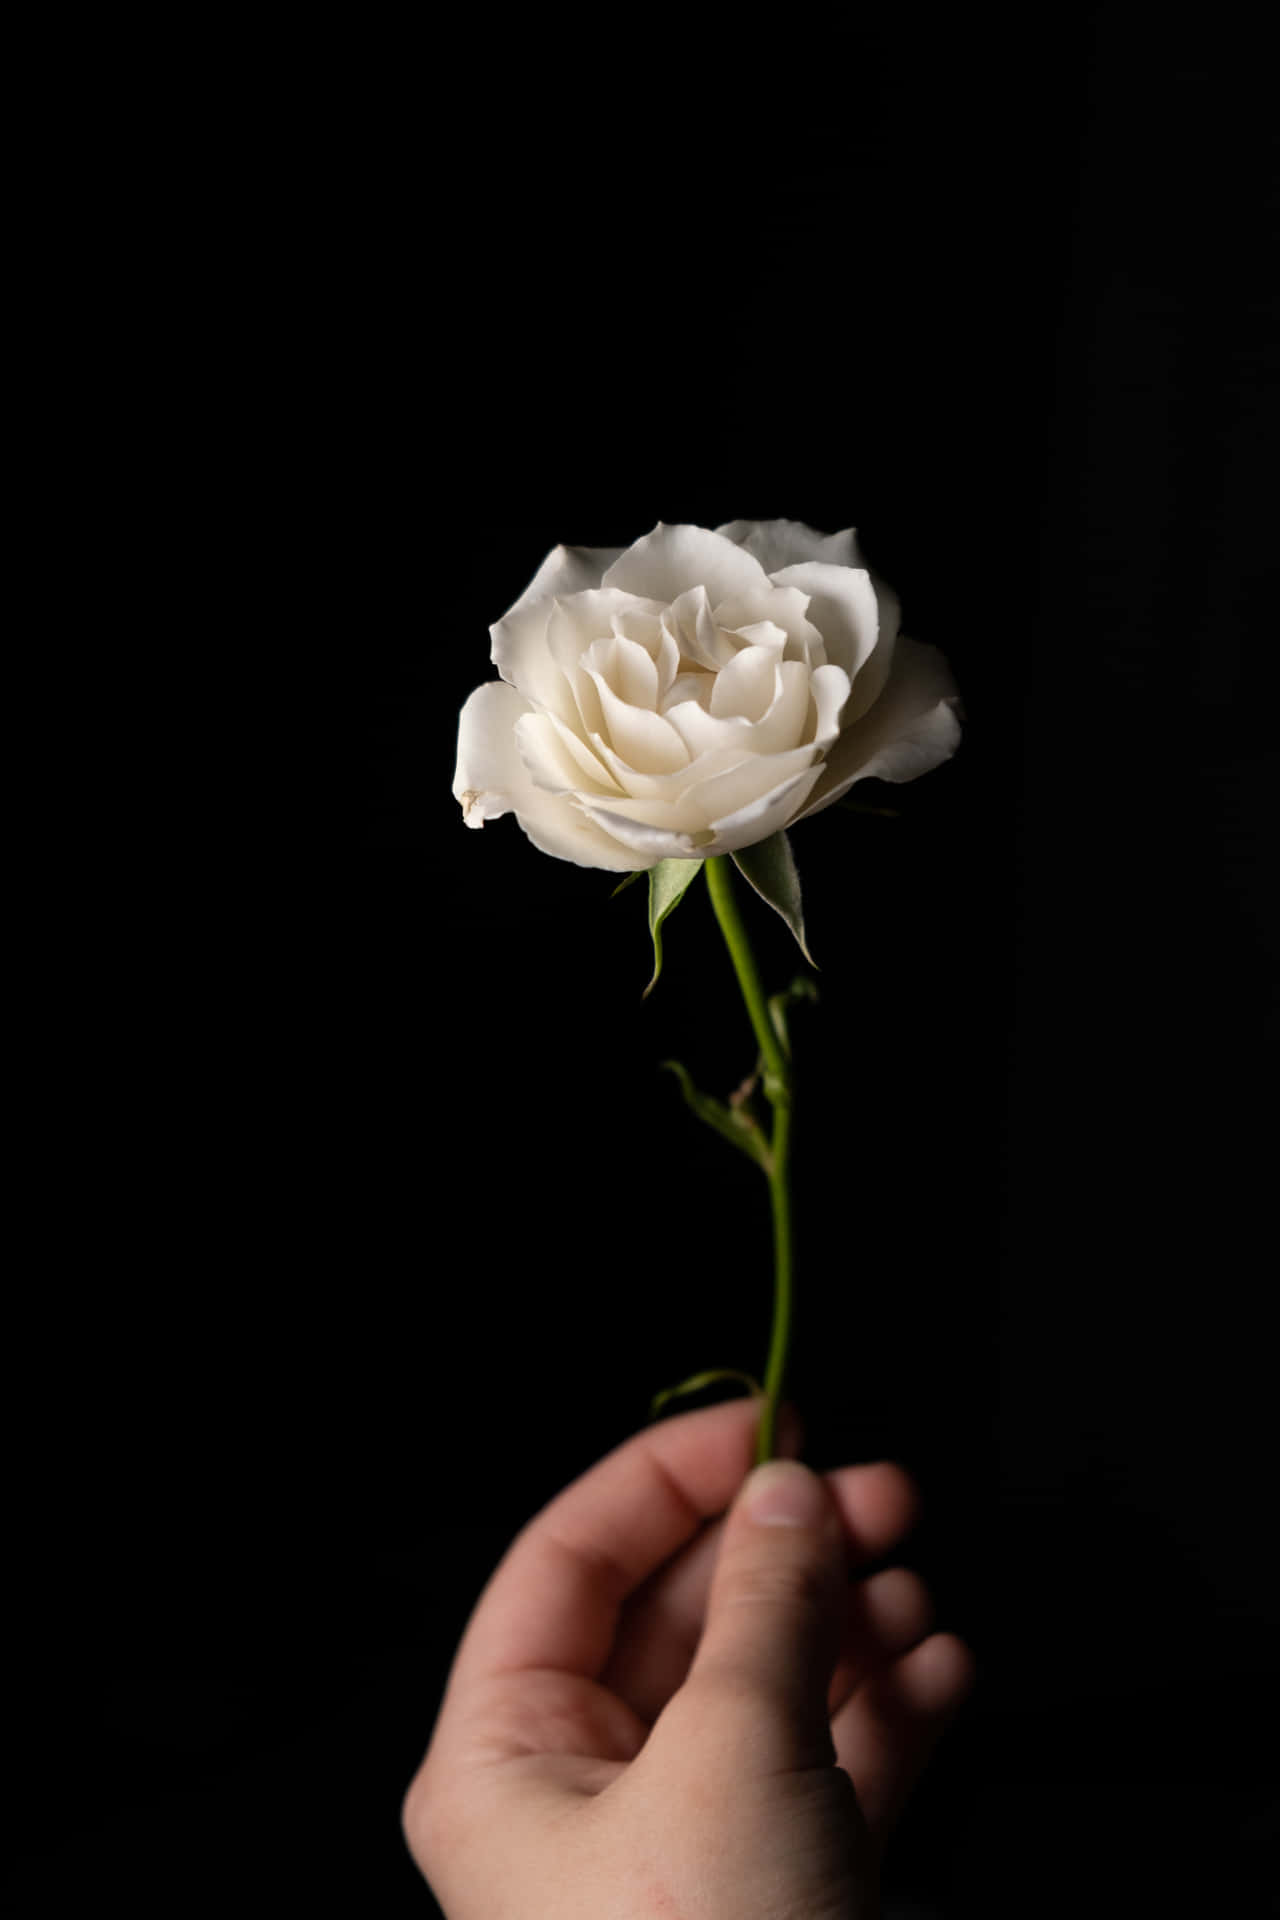 En hvid rose med følsomme kronblade skiller sig ud mod et strejf af blødt lyserødt, hvilket skaber et smukt kontrast.